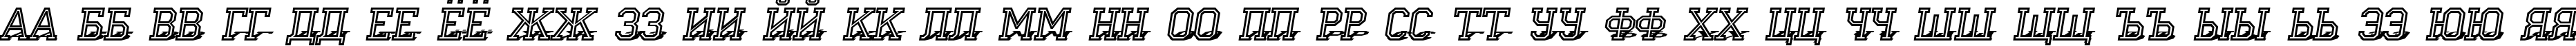 Пример написания русского алфавита шрифтом a_CampusOtl3DShad